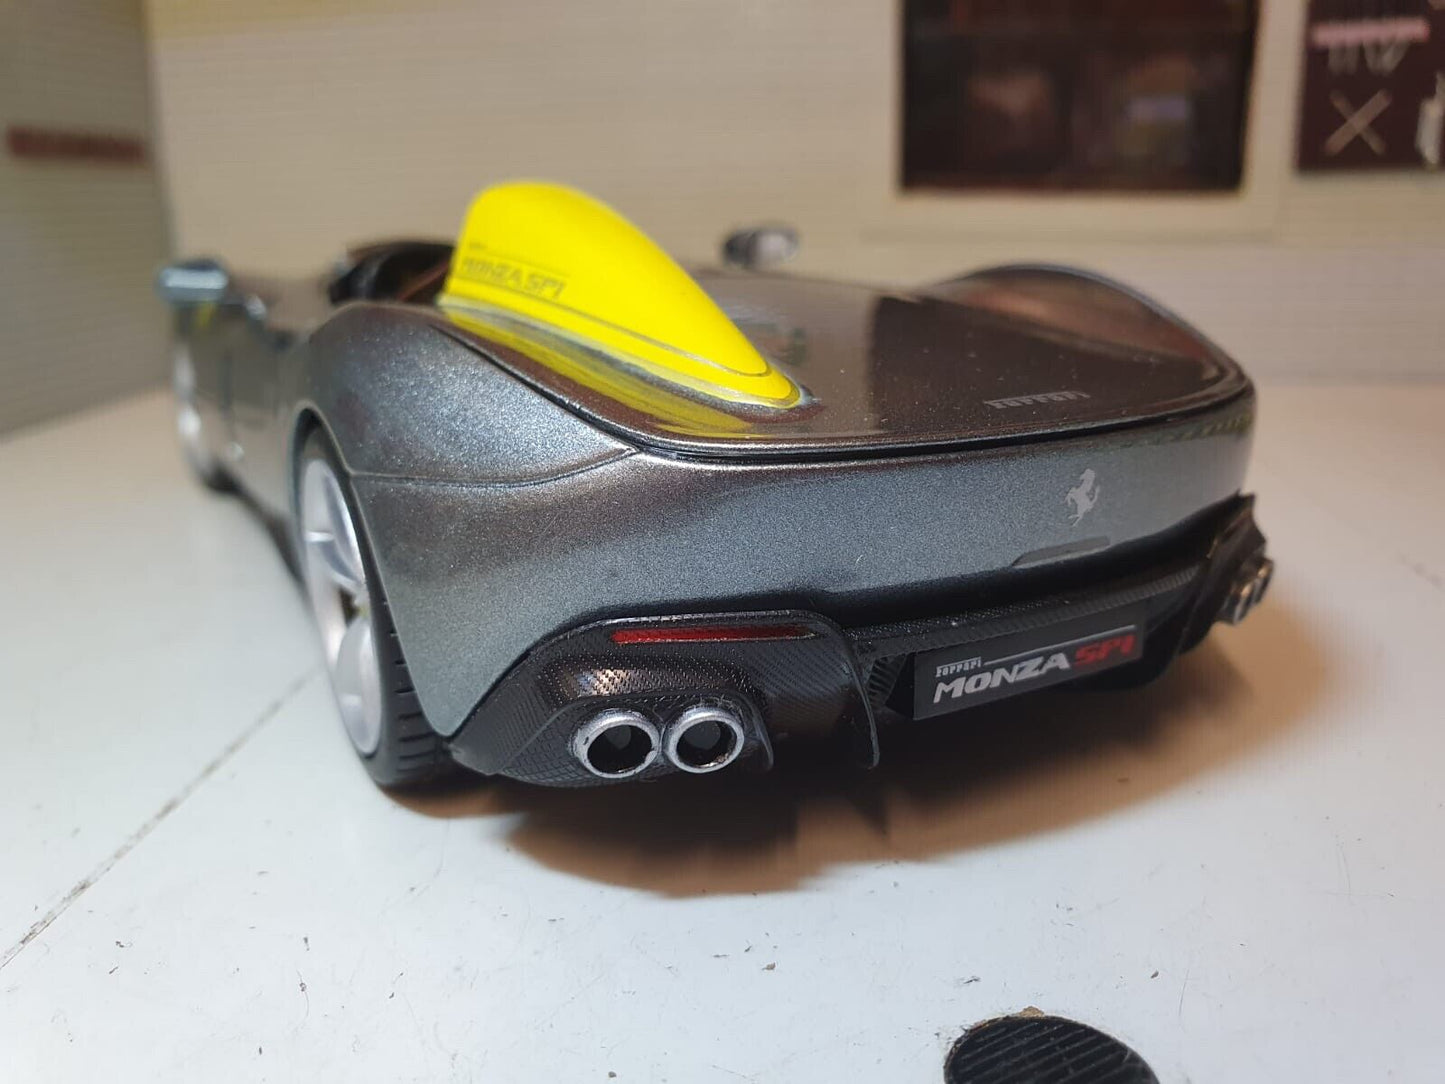 Ferrari Monza SP1 Bburago 26027 1:24